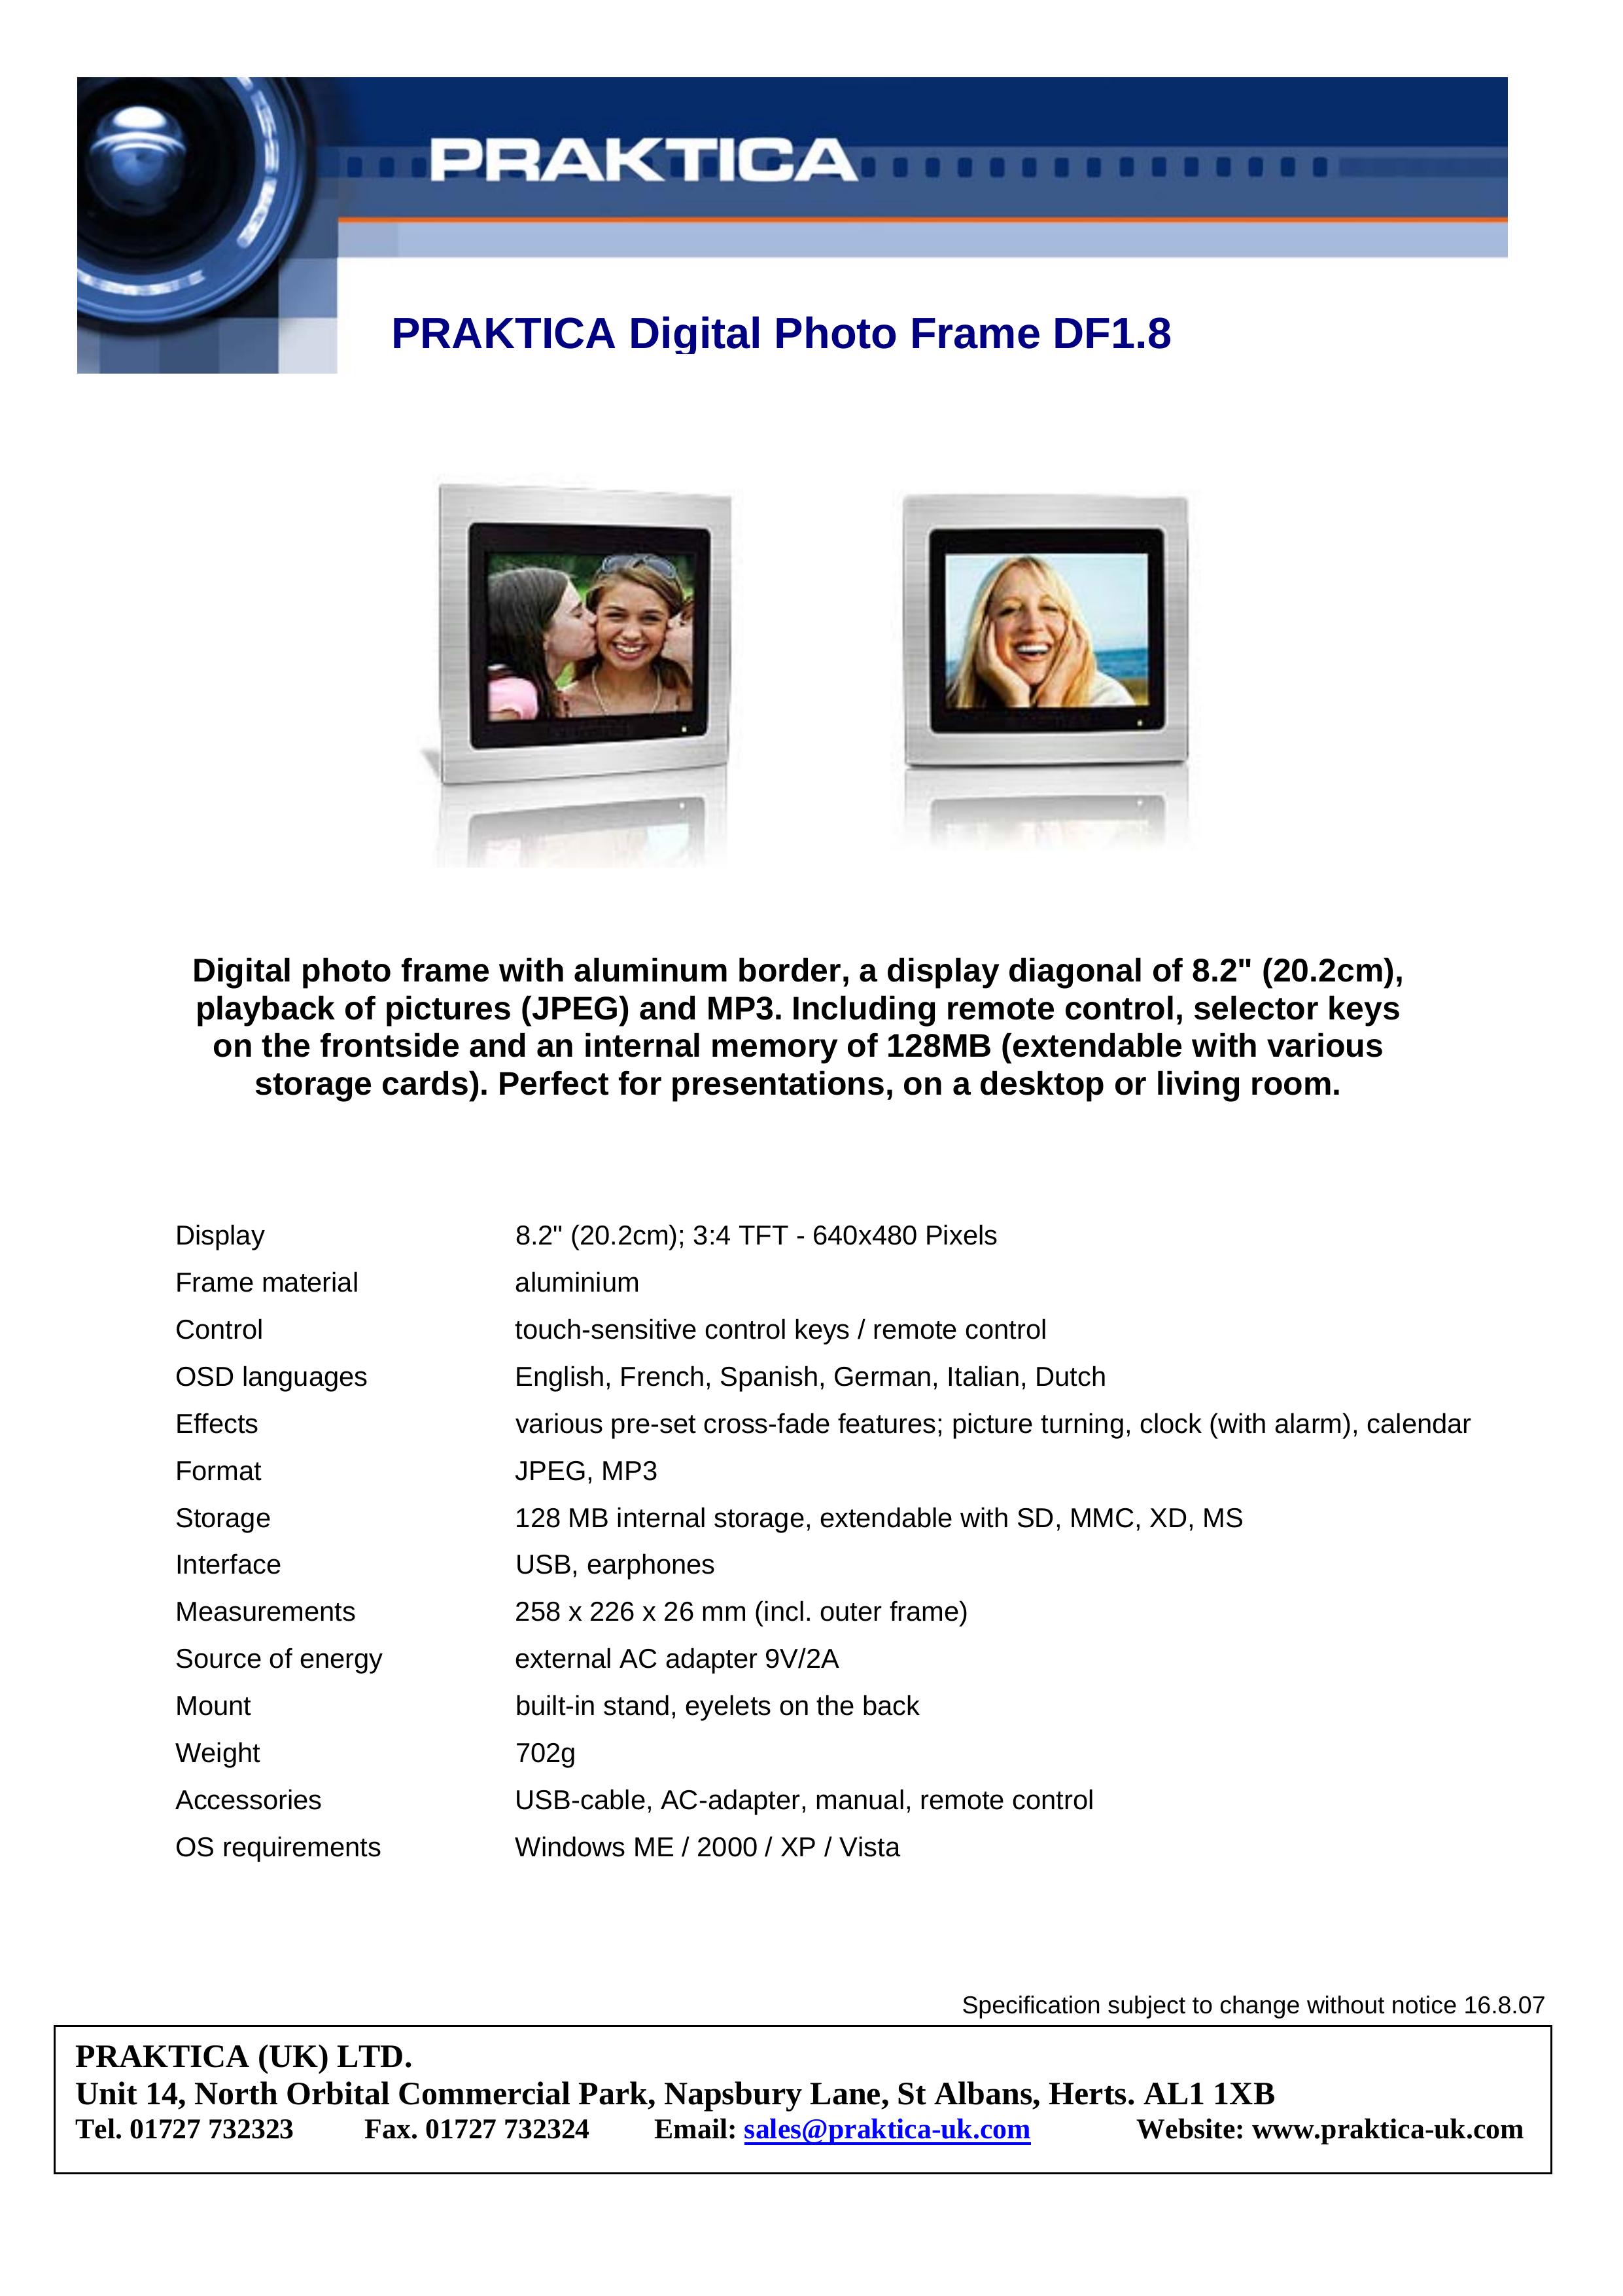 Praktica DF1.8 Digital Photo Frame User Manual